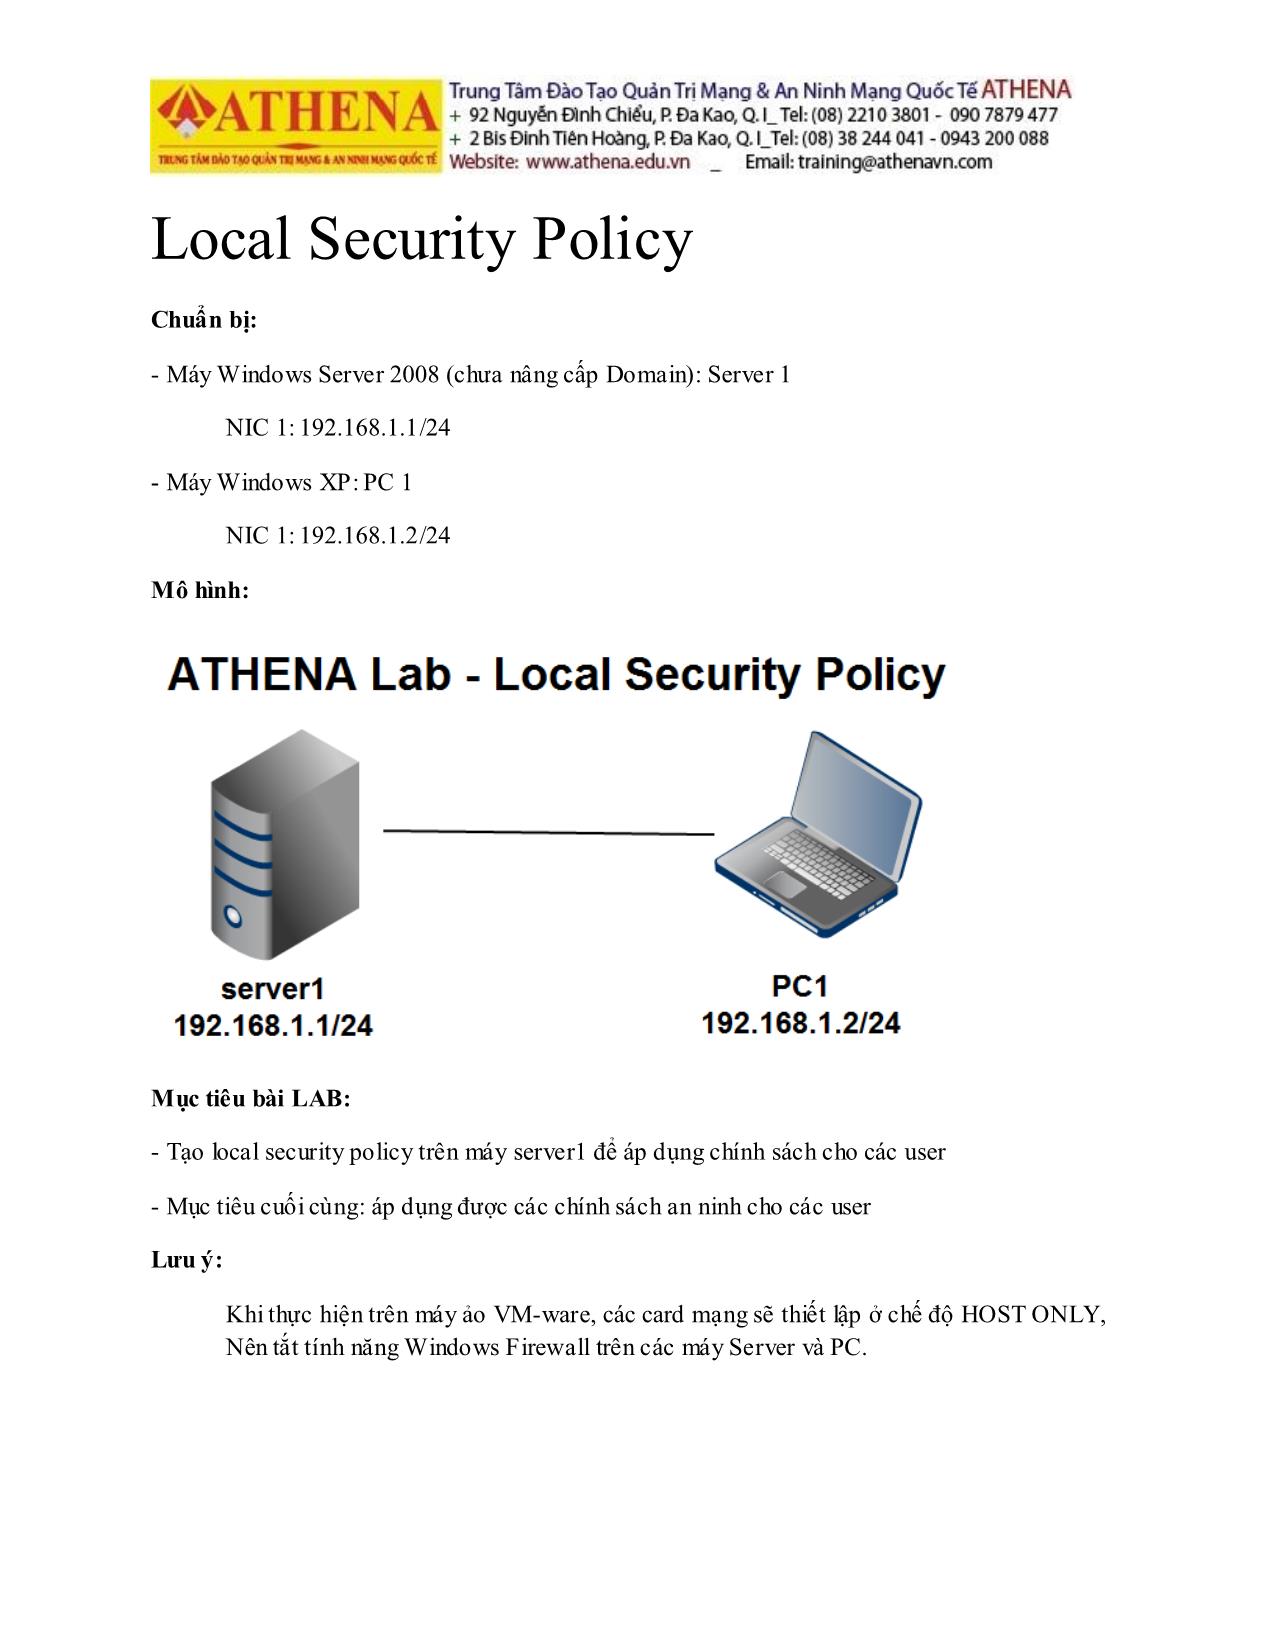 Tài liệu Hướng dẫn thực hành quản trị mạng - Local security policy trang 1